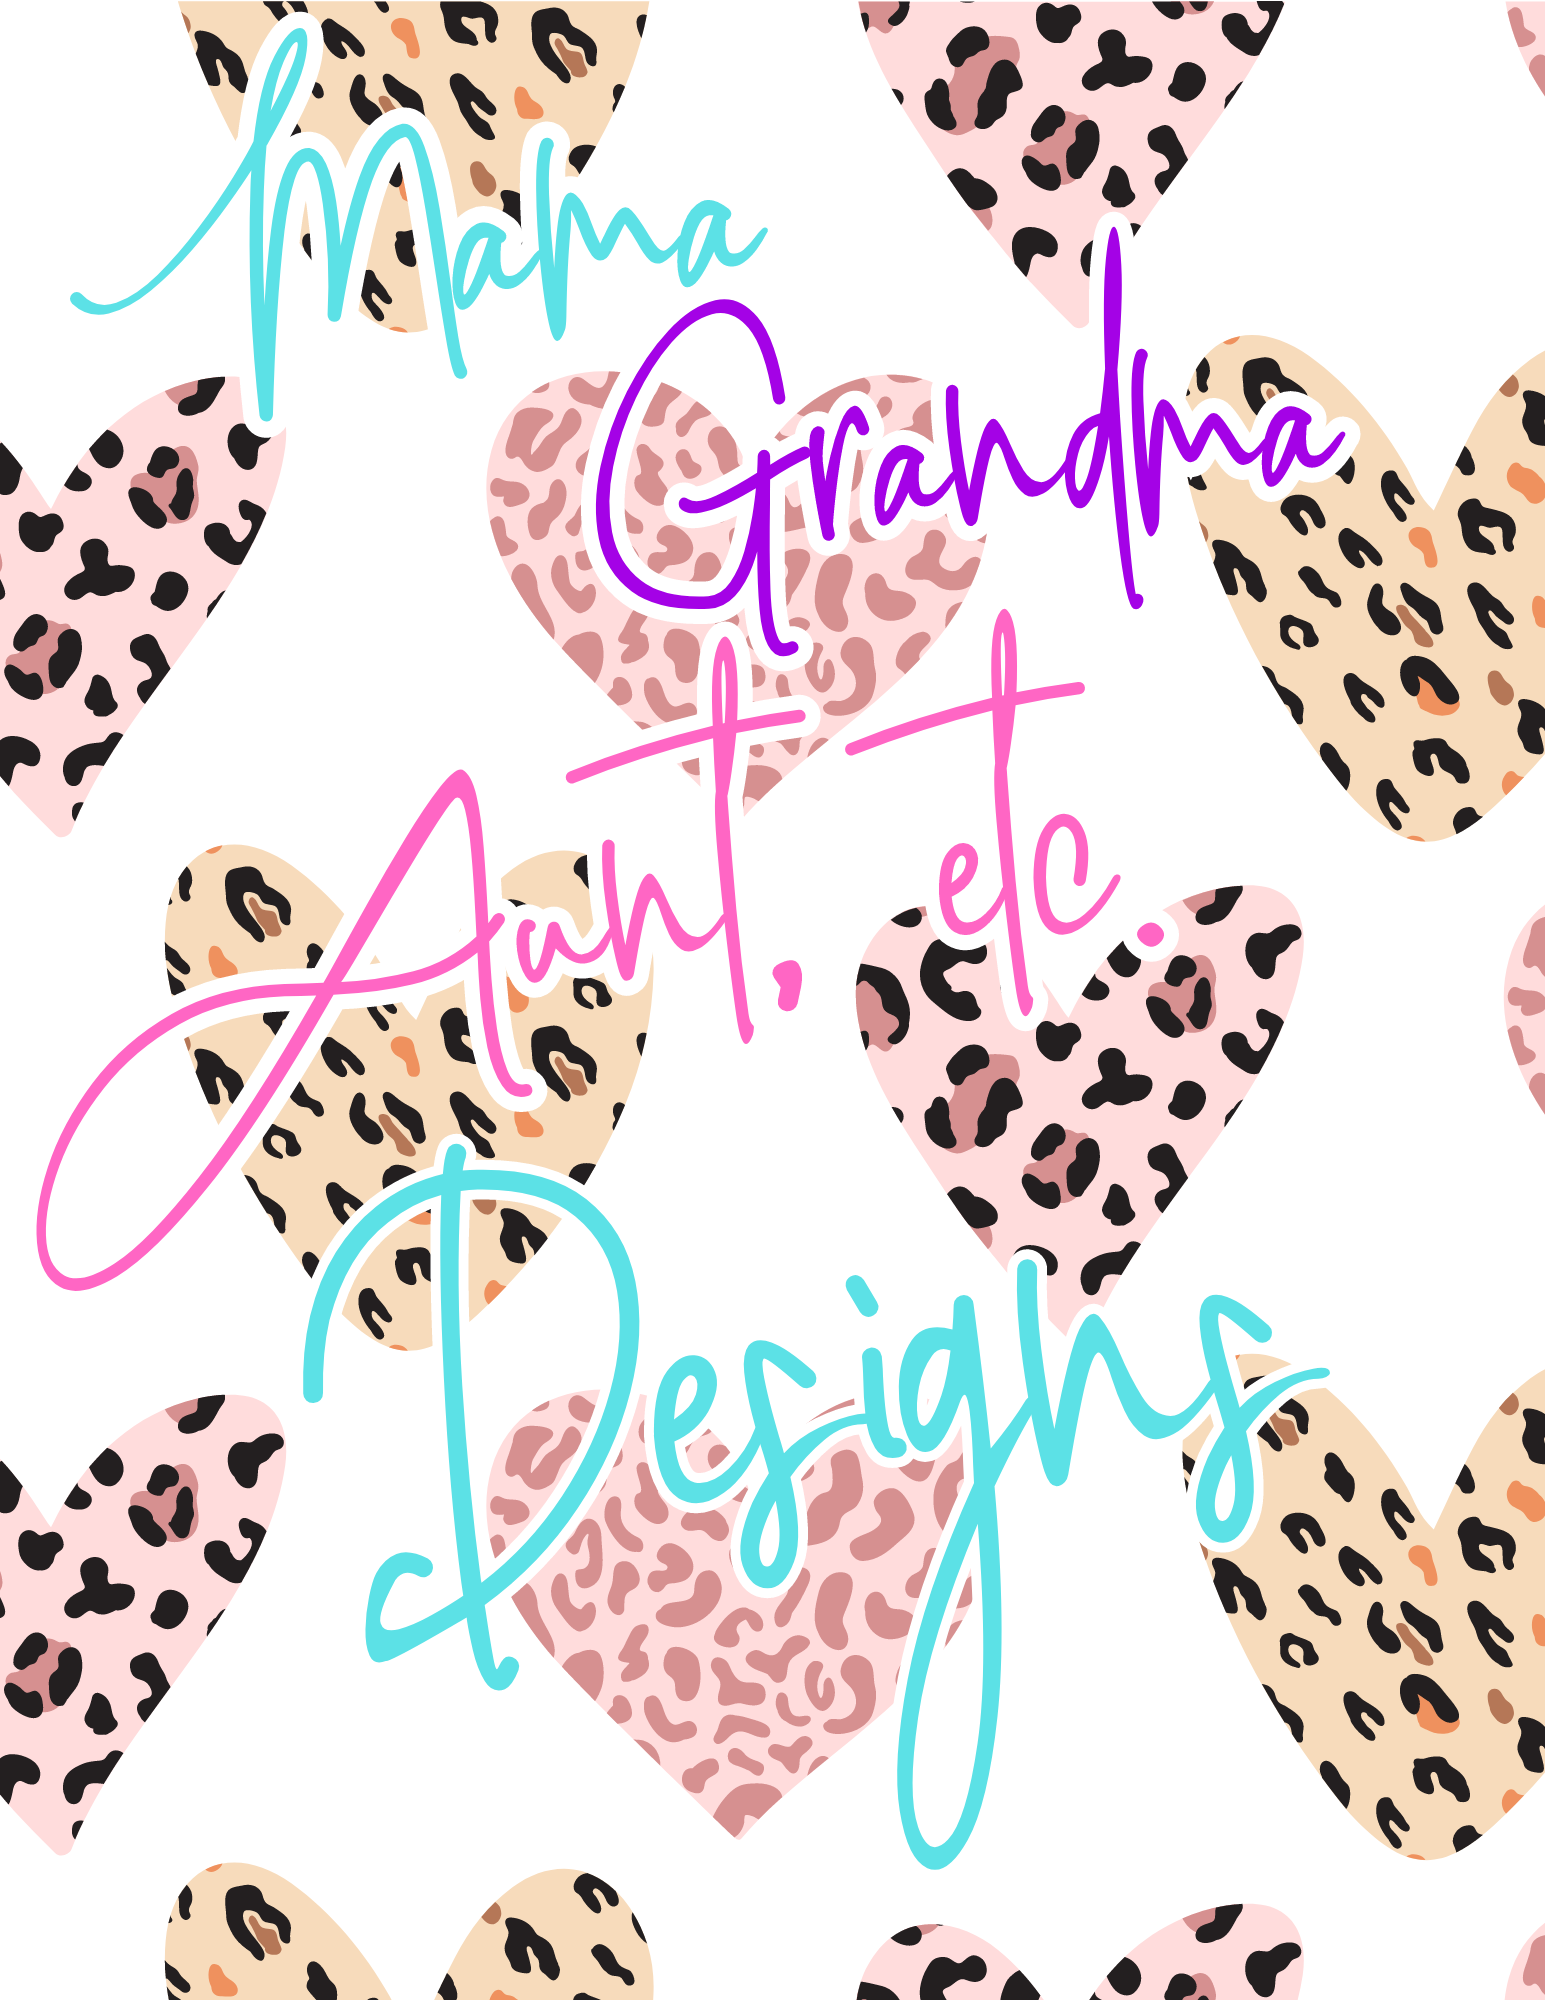 Mama, Grandma, Auntie, etc Designs